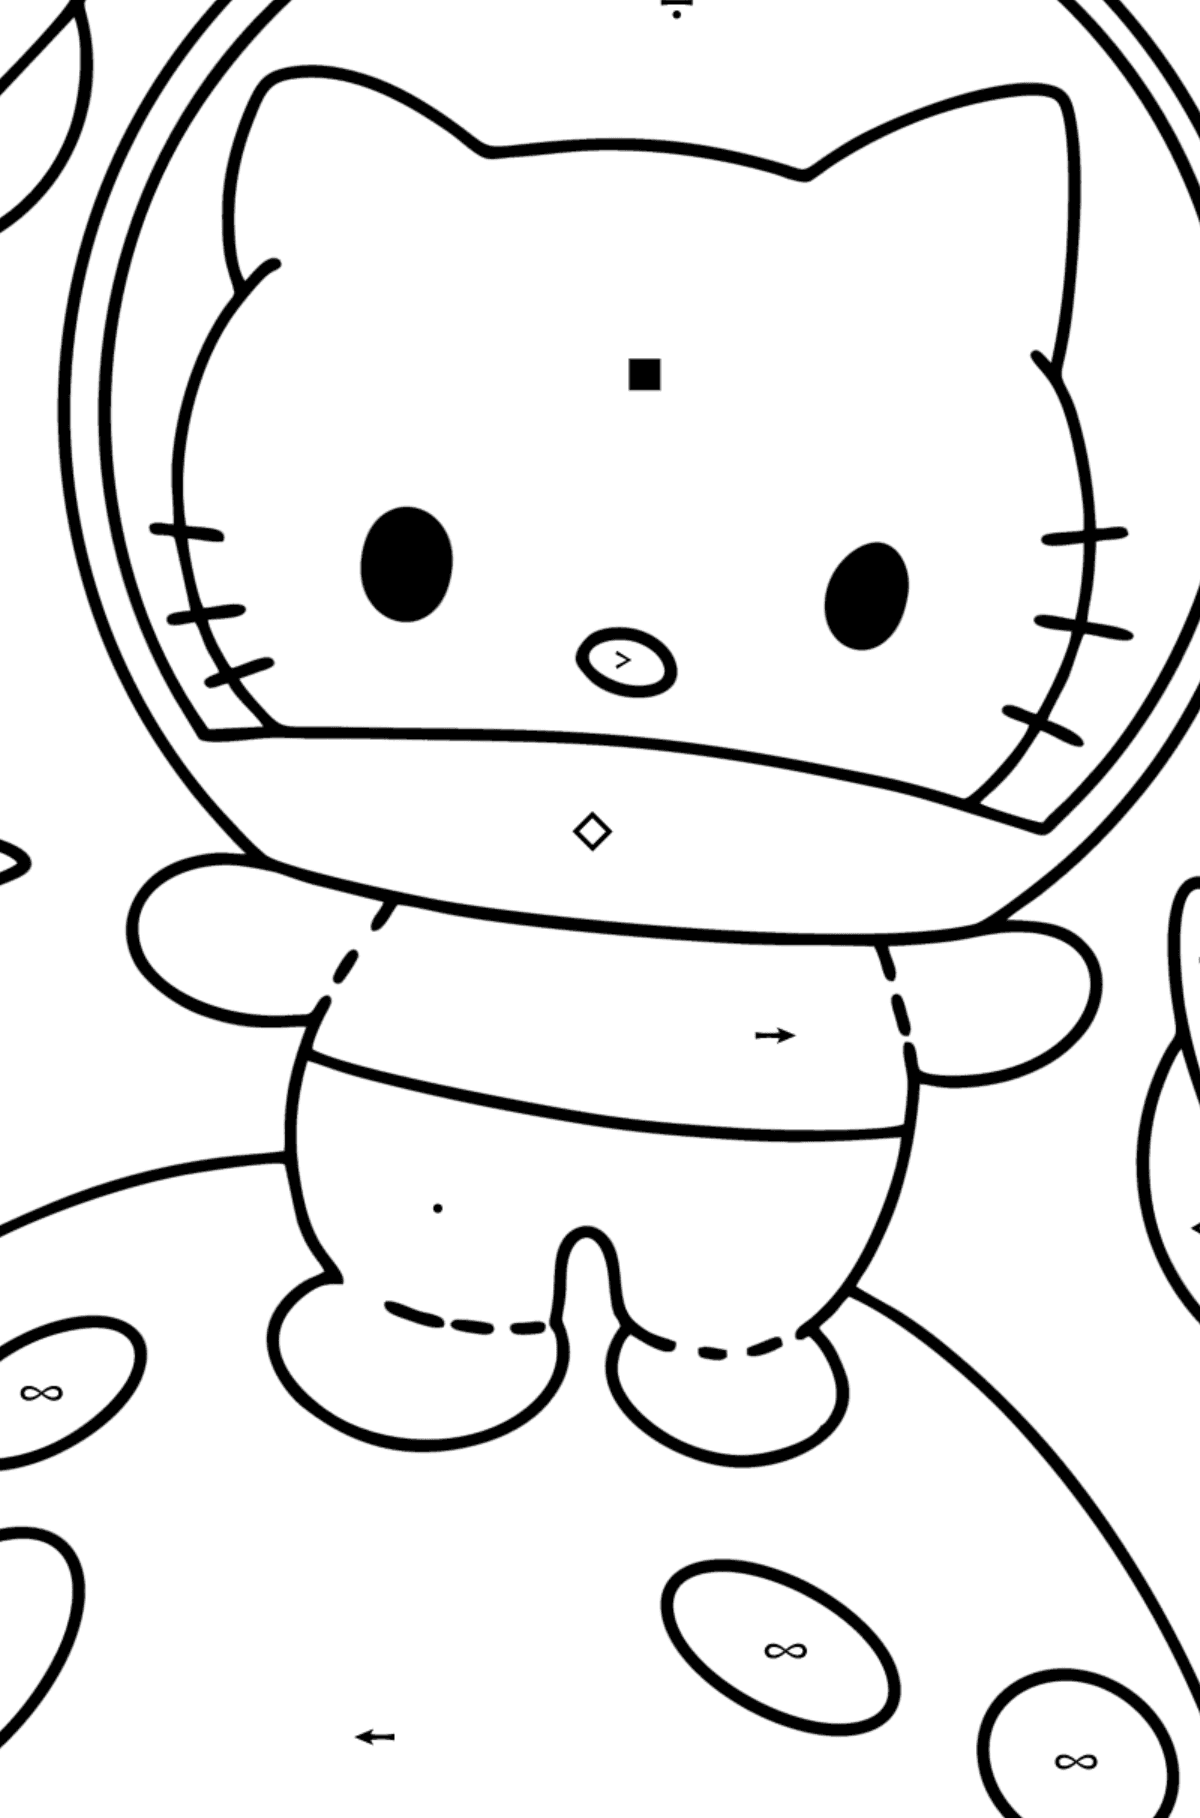 Tegning til fargelegging Hello Kitty astronaut - Fargelegge etter symboler for barn